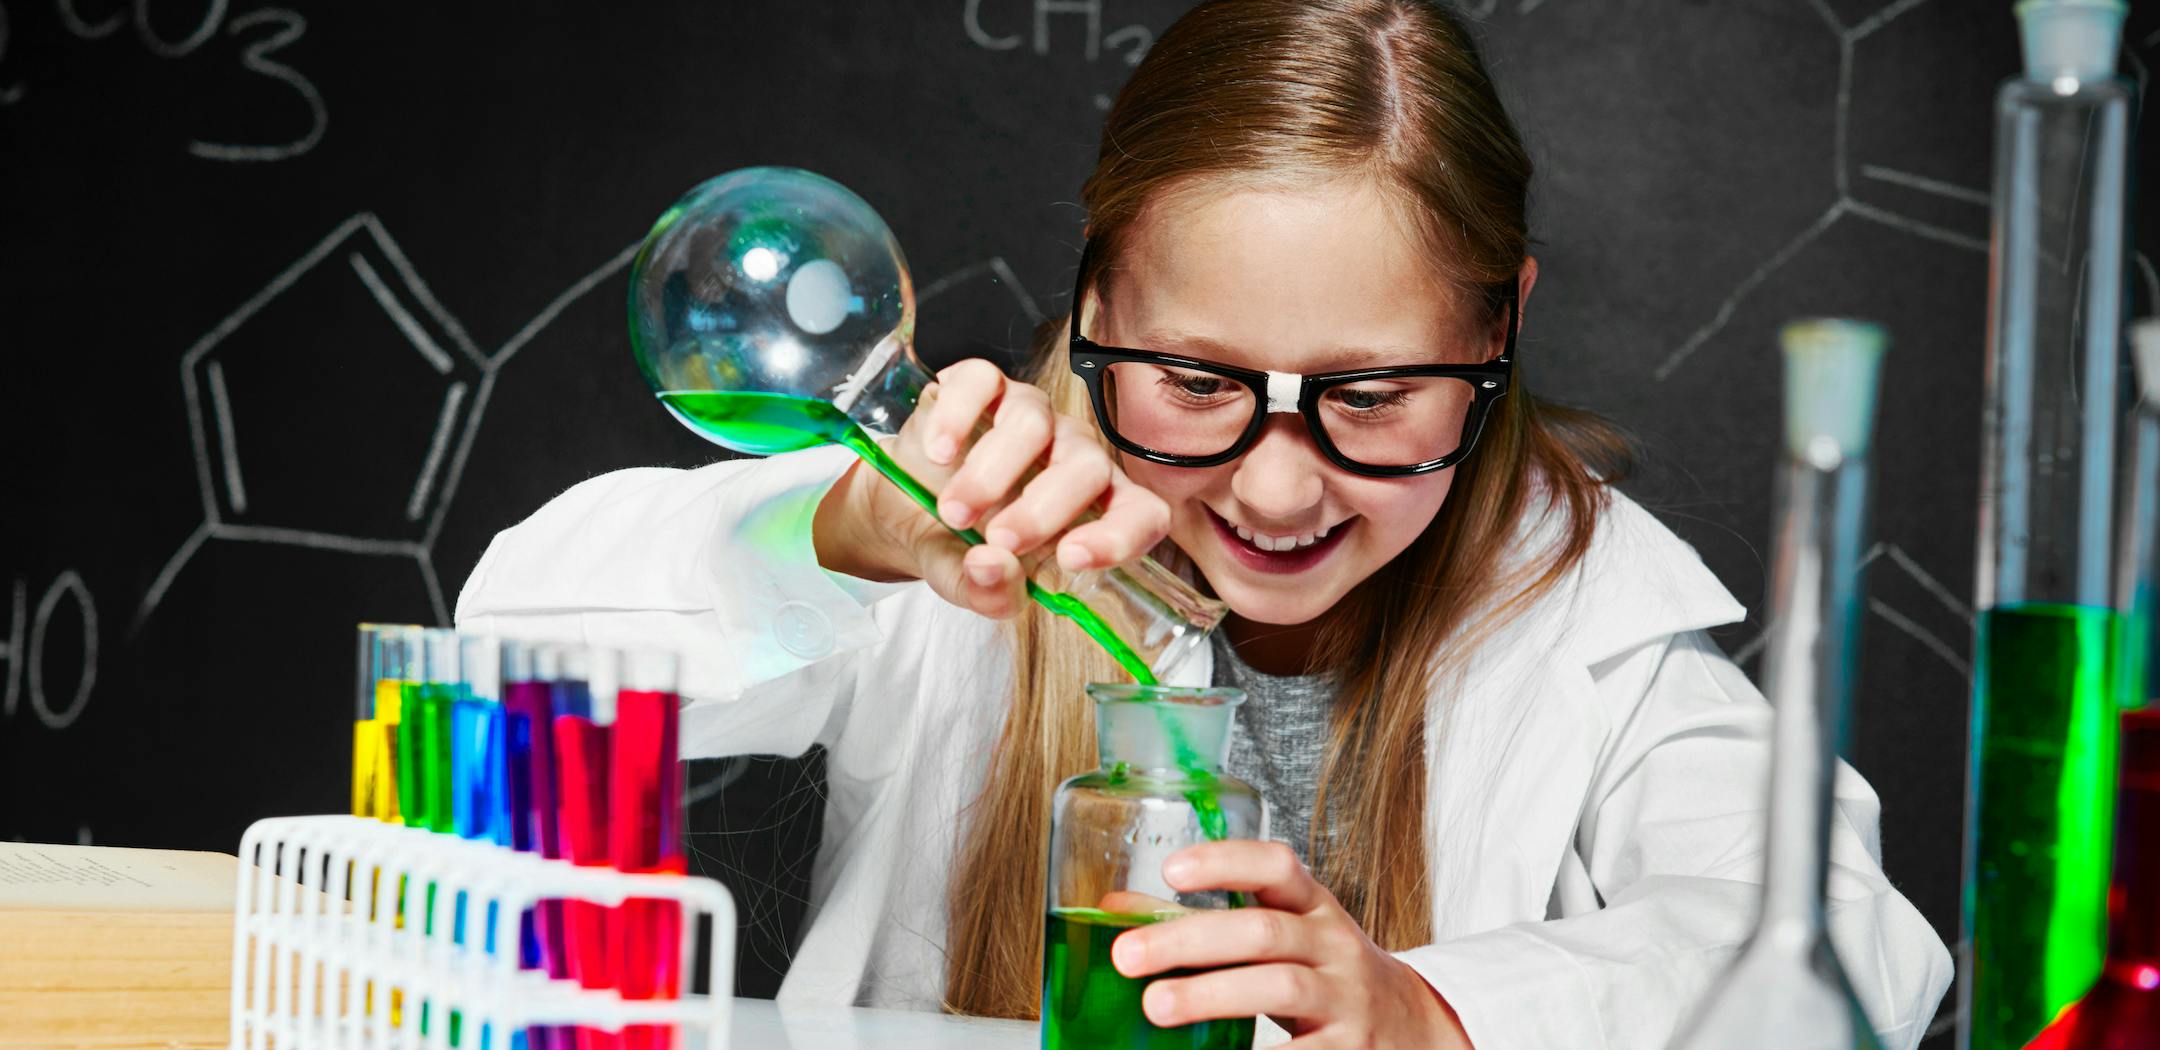 Опыты можно выполнять. Занимательные науки. Записи экспериментов. Stem научные исследования. Девочка делает эксперимент.